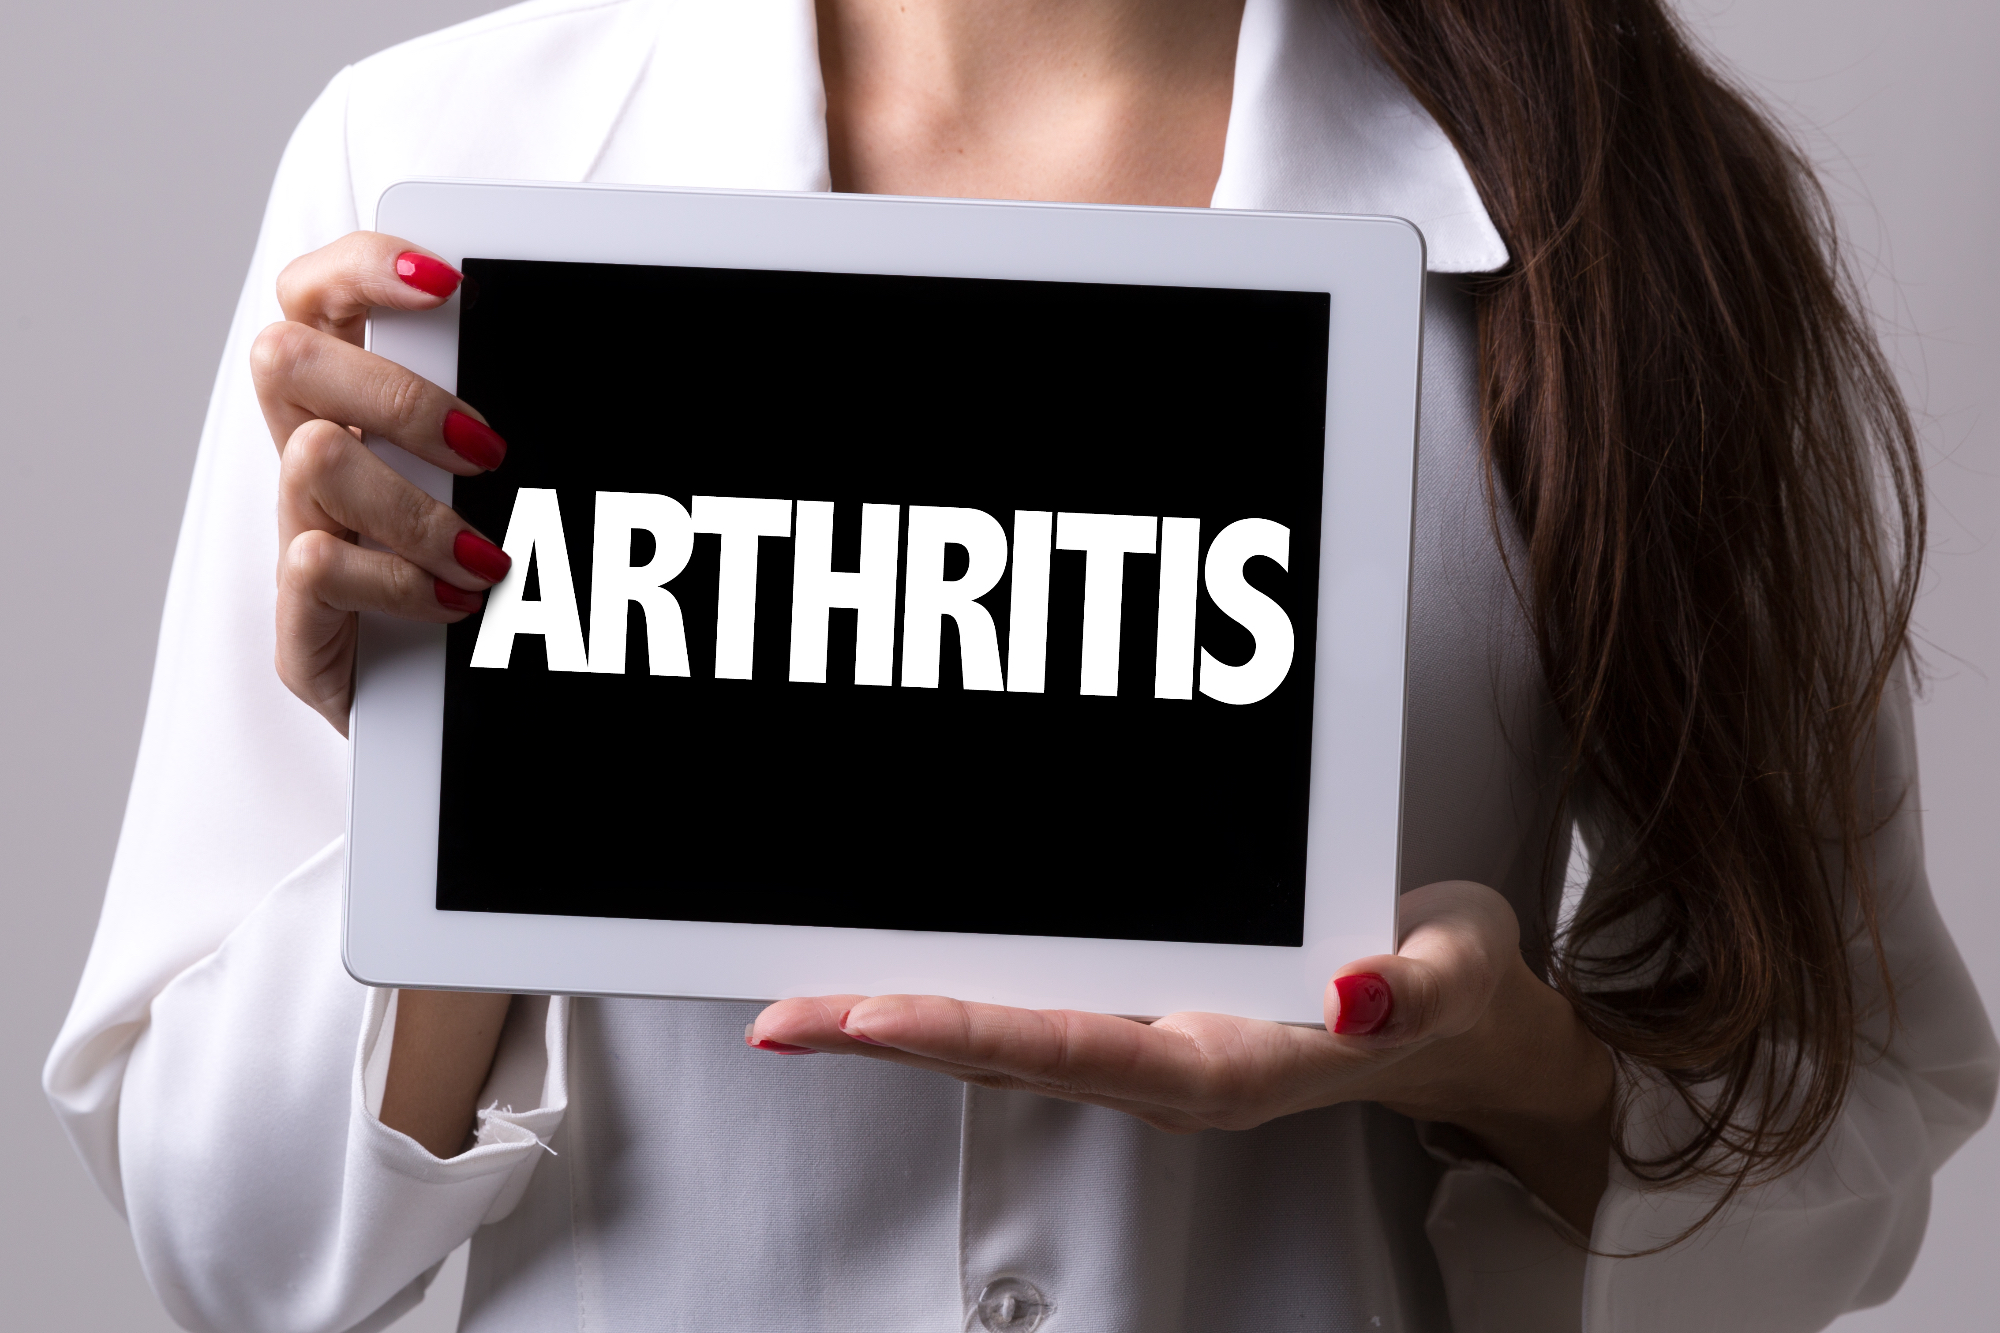 Revmatoidni artritis lahko prepoznamo res zelo enostavno